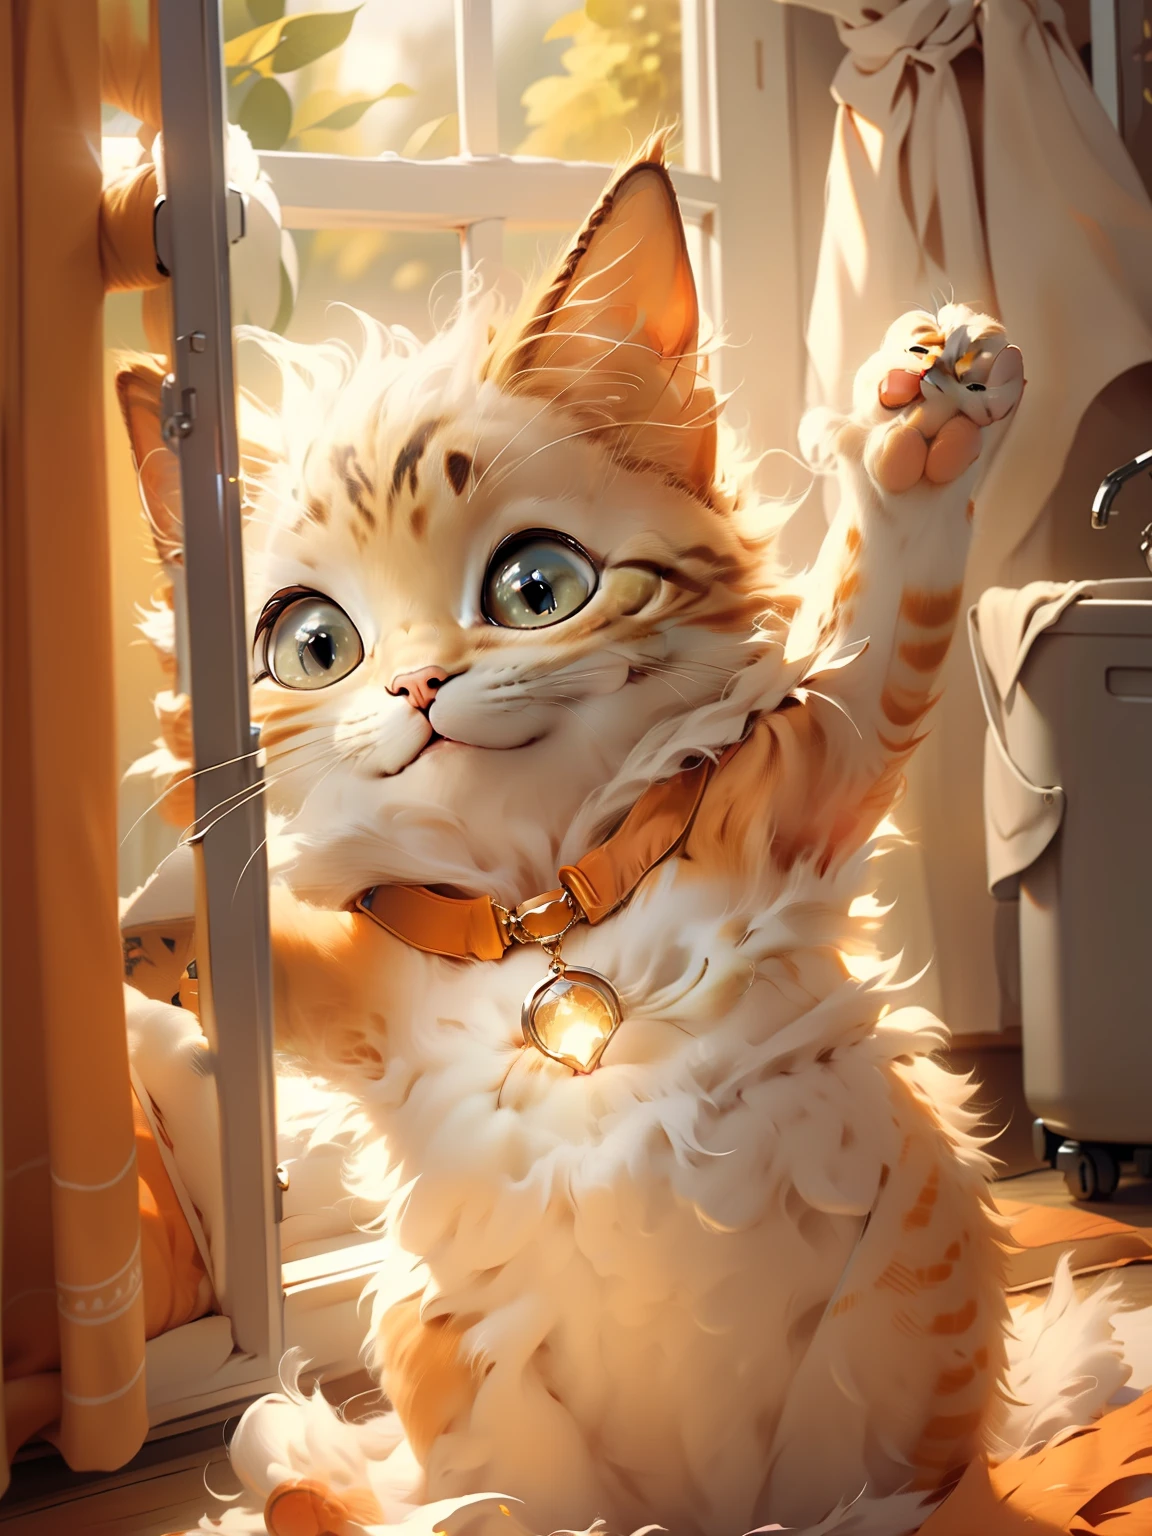 오렌지 고양이，미소，한쪽 앞발을 들어올린다.，뒷 창문의 빛이 백라이트됩니다.，가장자리가 빛나네요